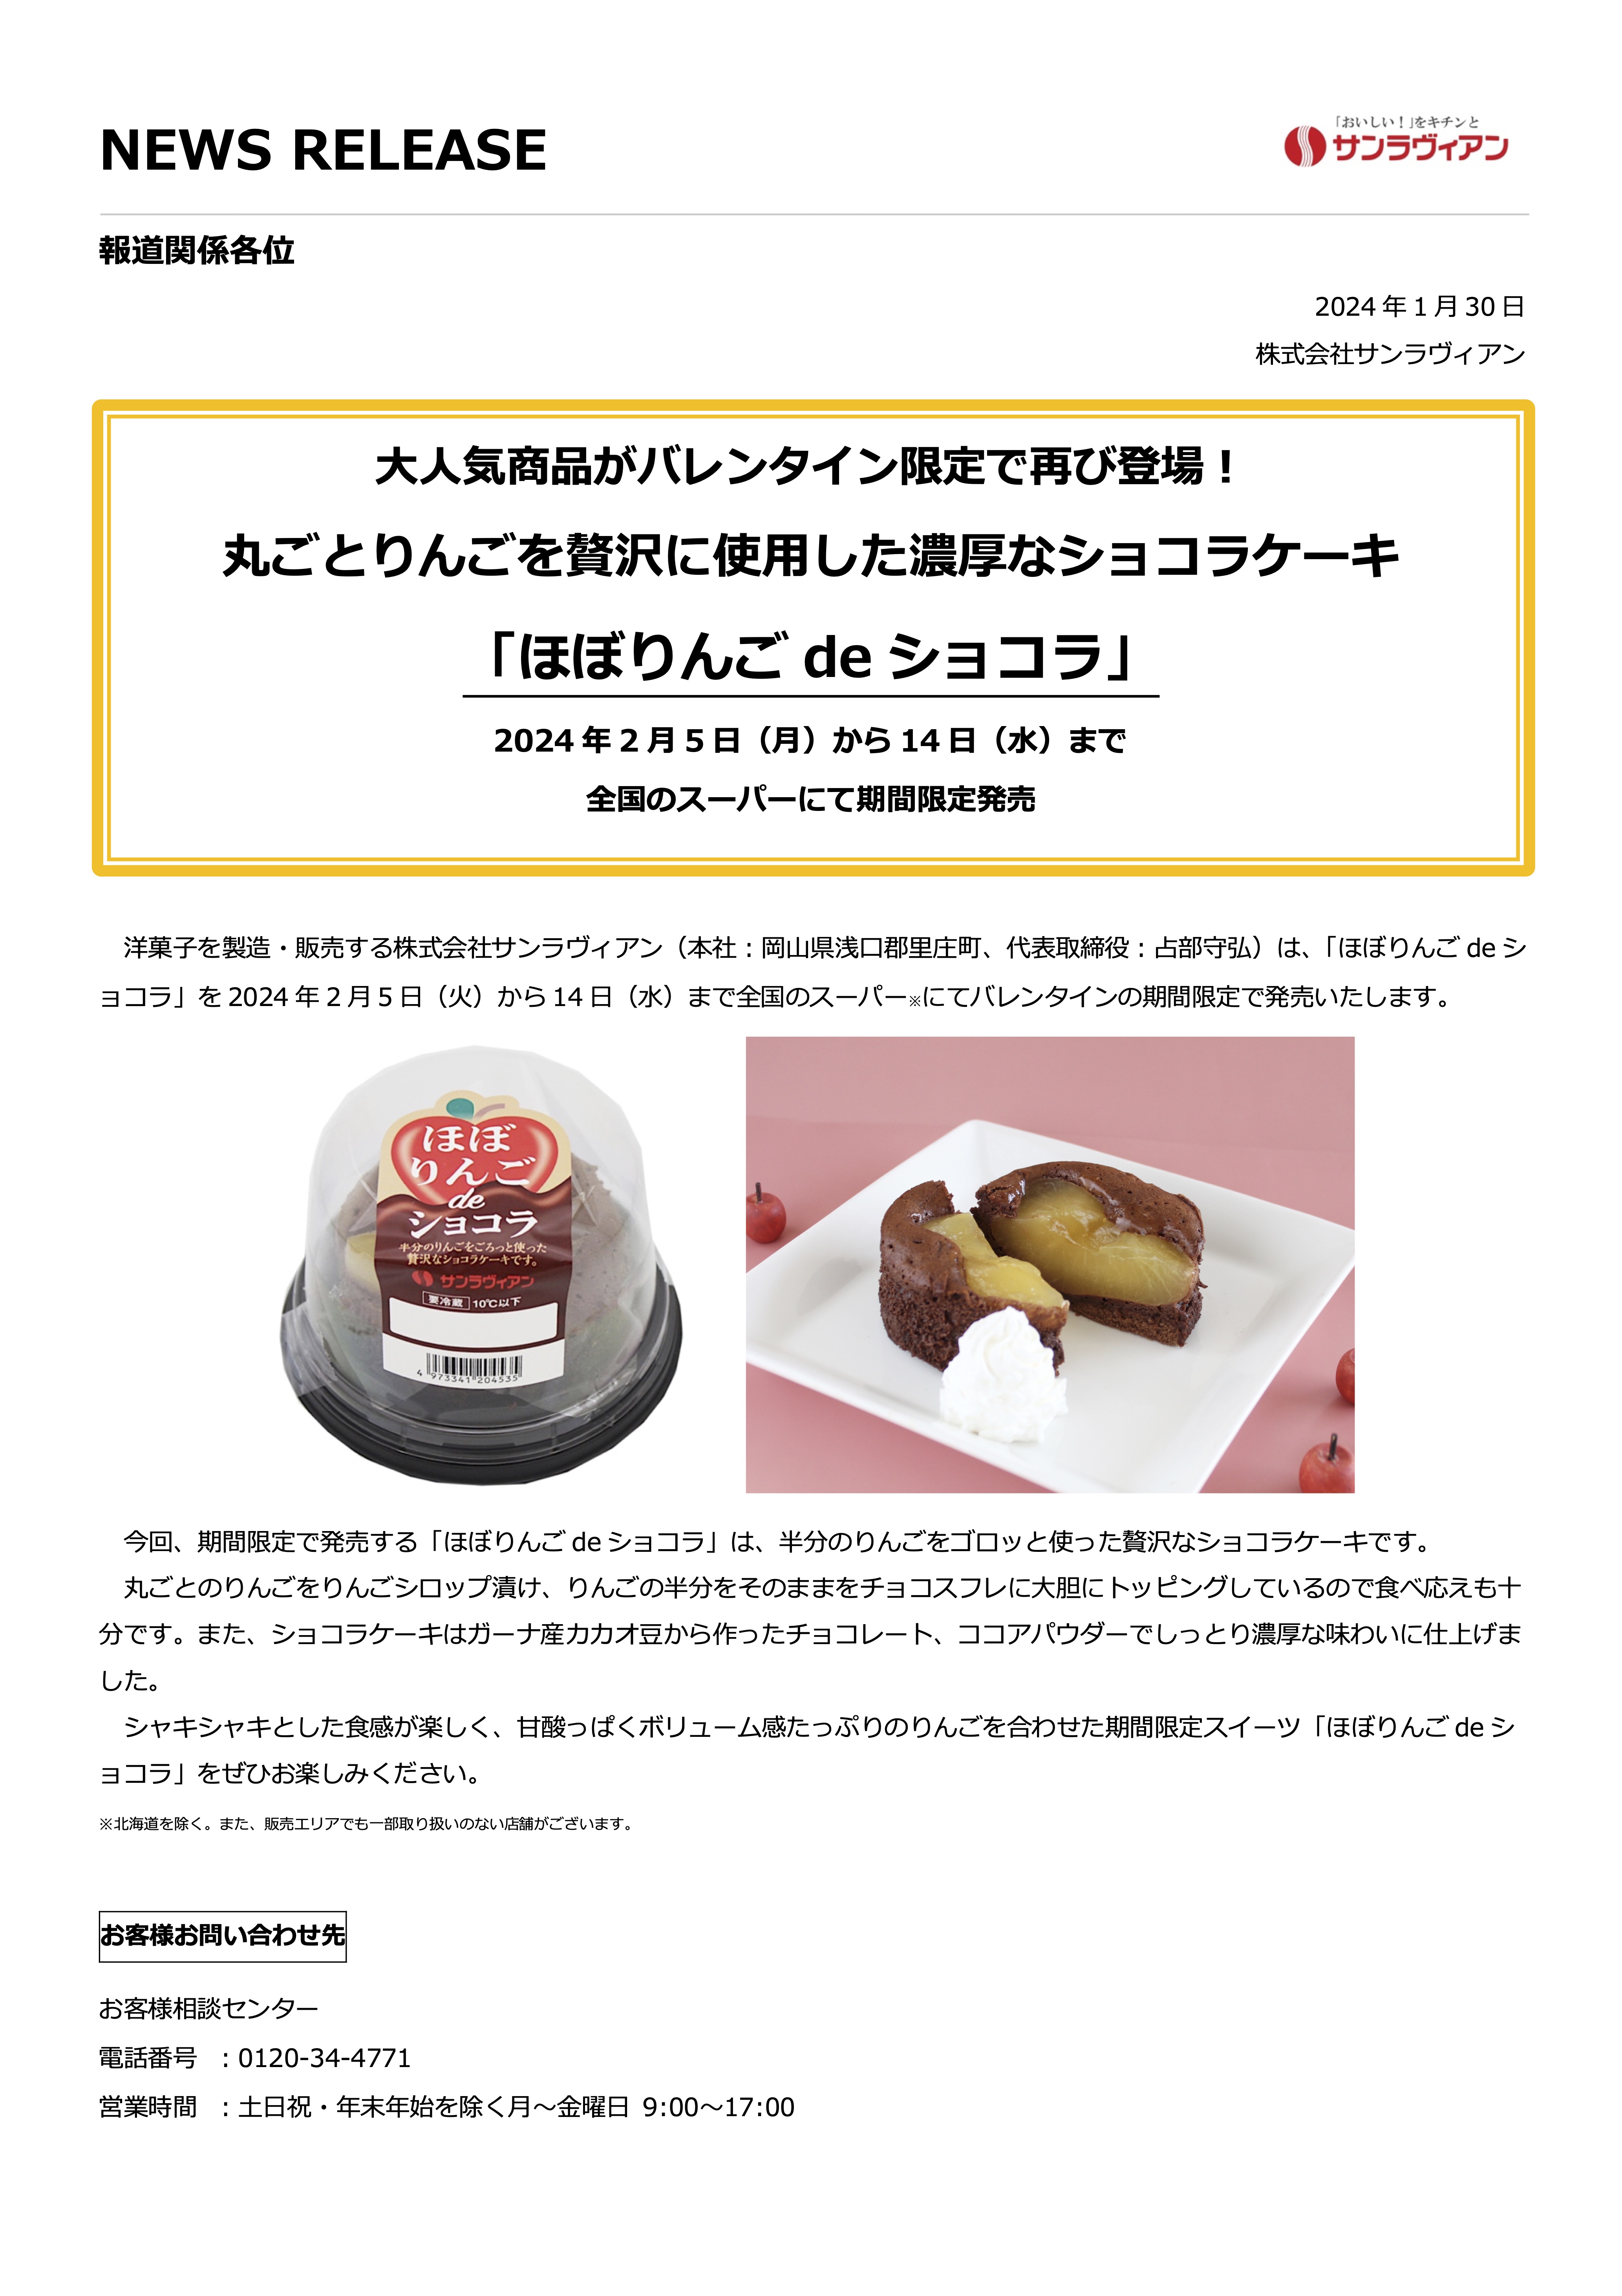 【NEWS RELEASE】丸ごとりんごを贅沢に使用した濃厚なショコラケーキ 「ほぼりんご de ショコラ」発売のお知らせ